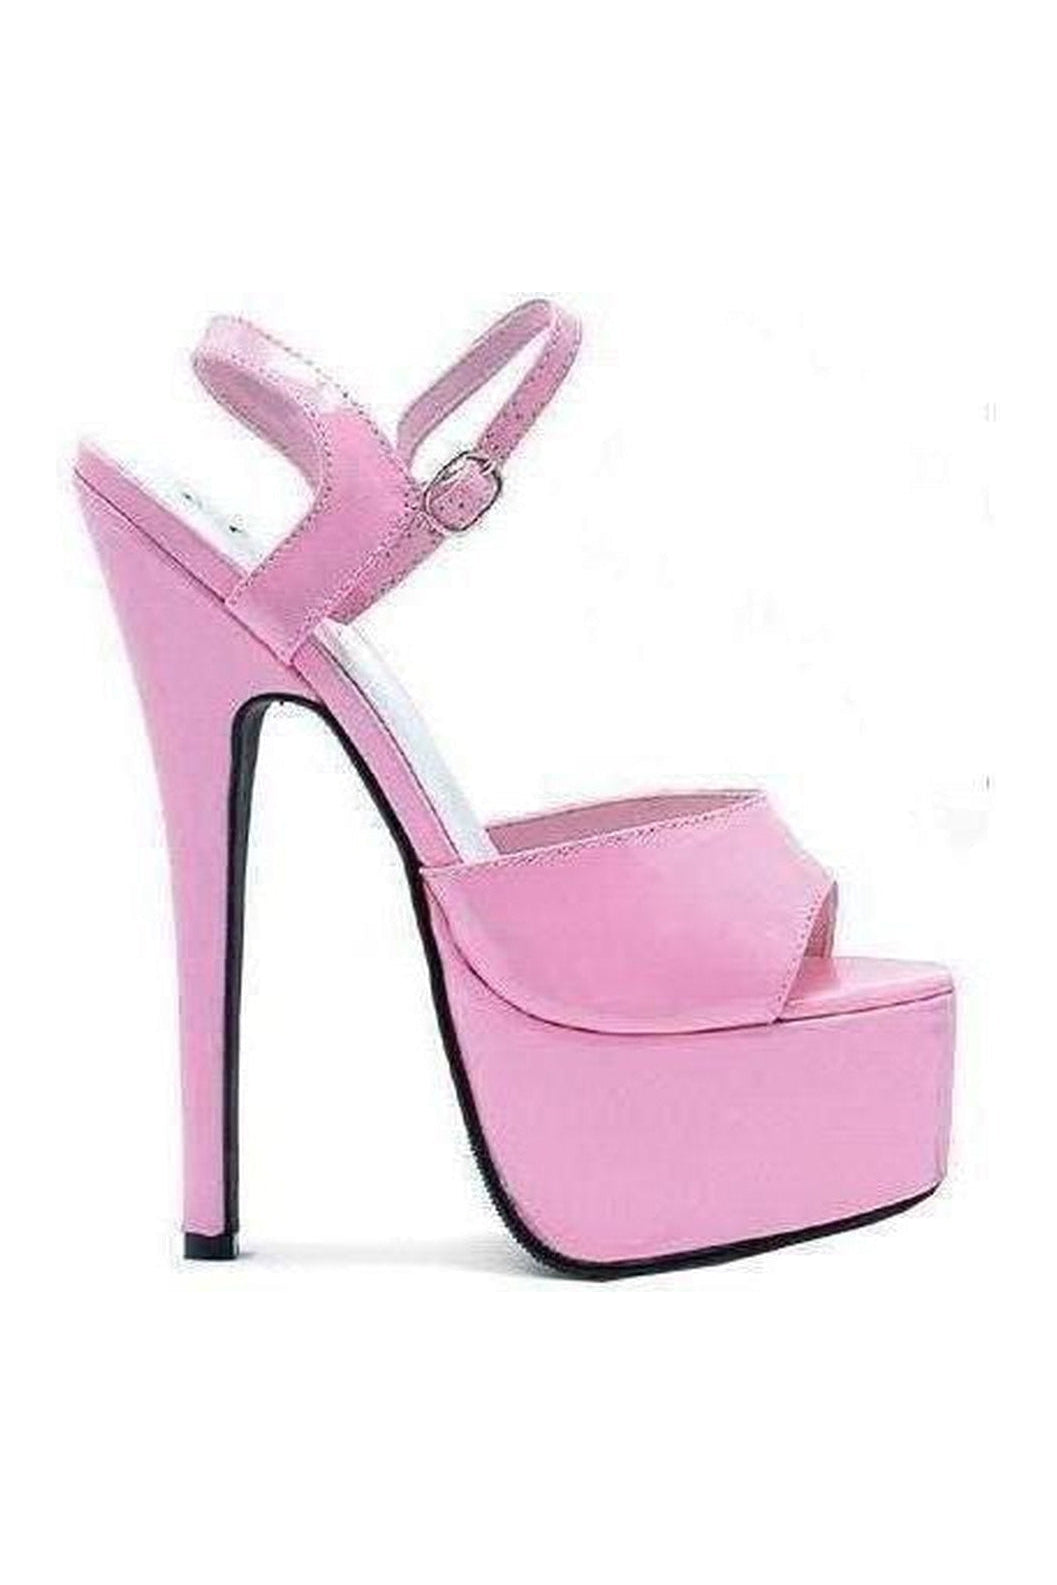 652-JULIET Platform Sandal | Pink Patent-Ellie Shoes-SEXYSHOES.COM